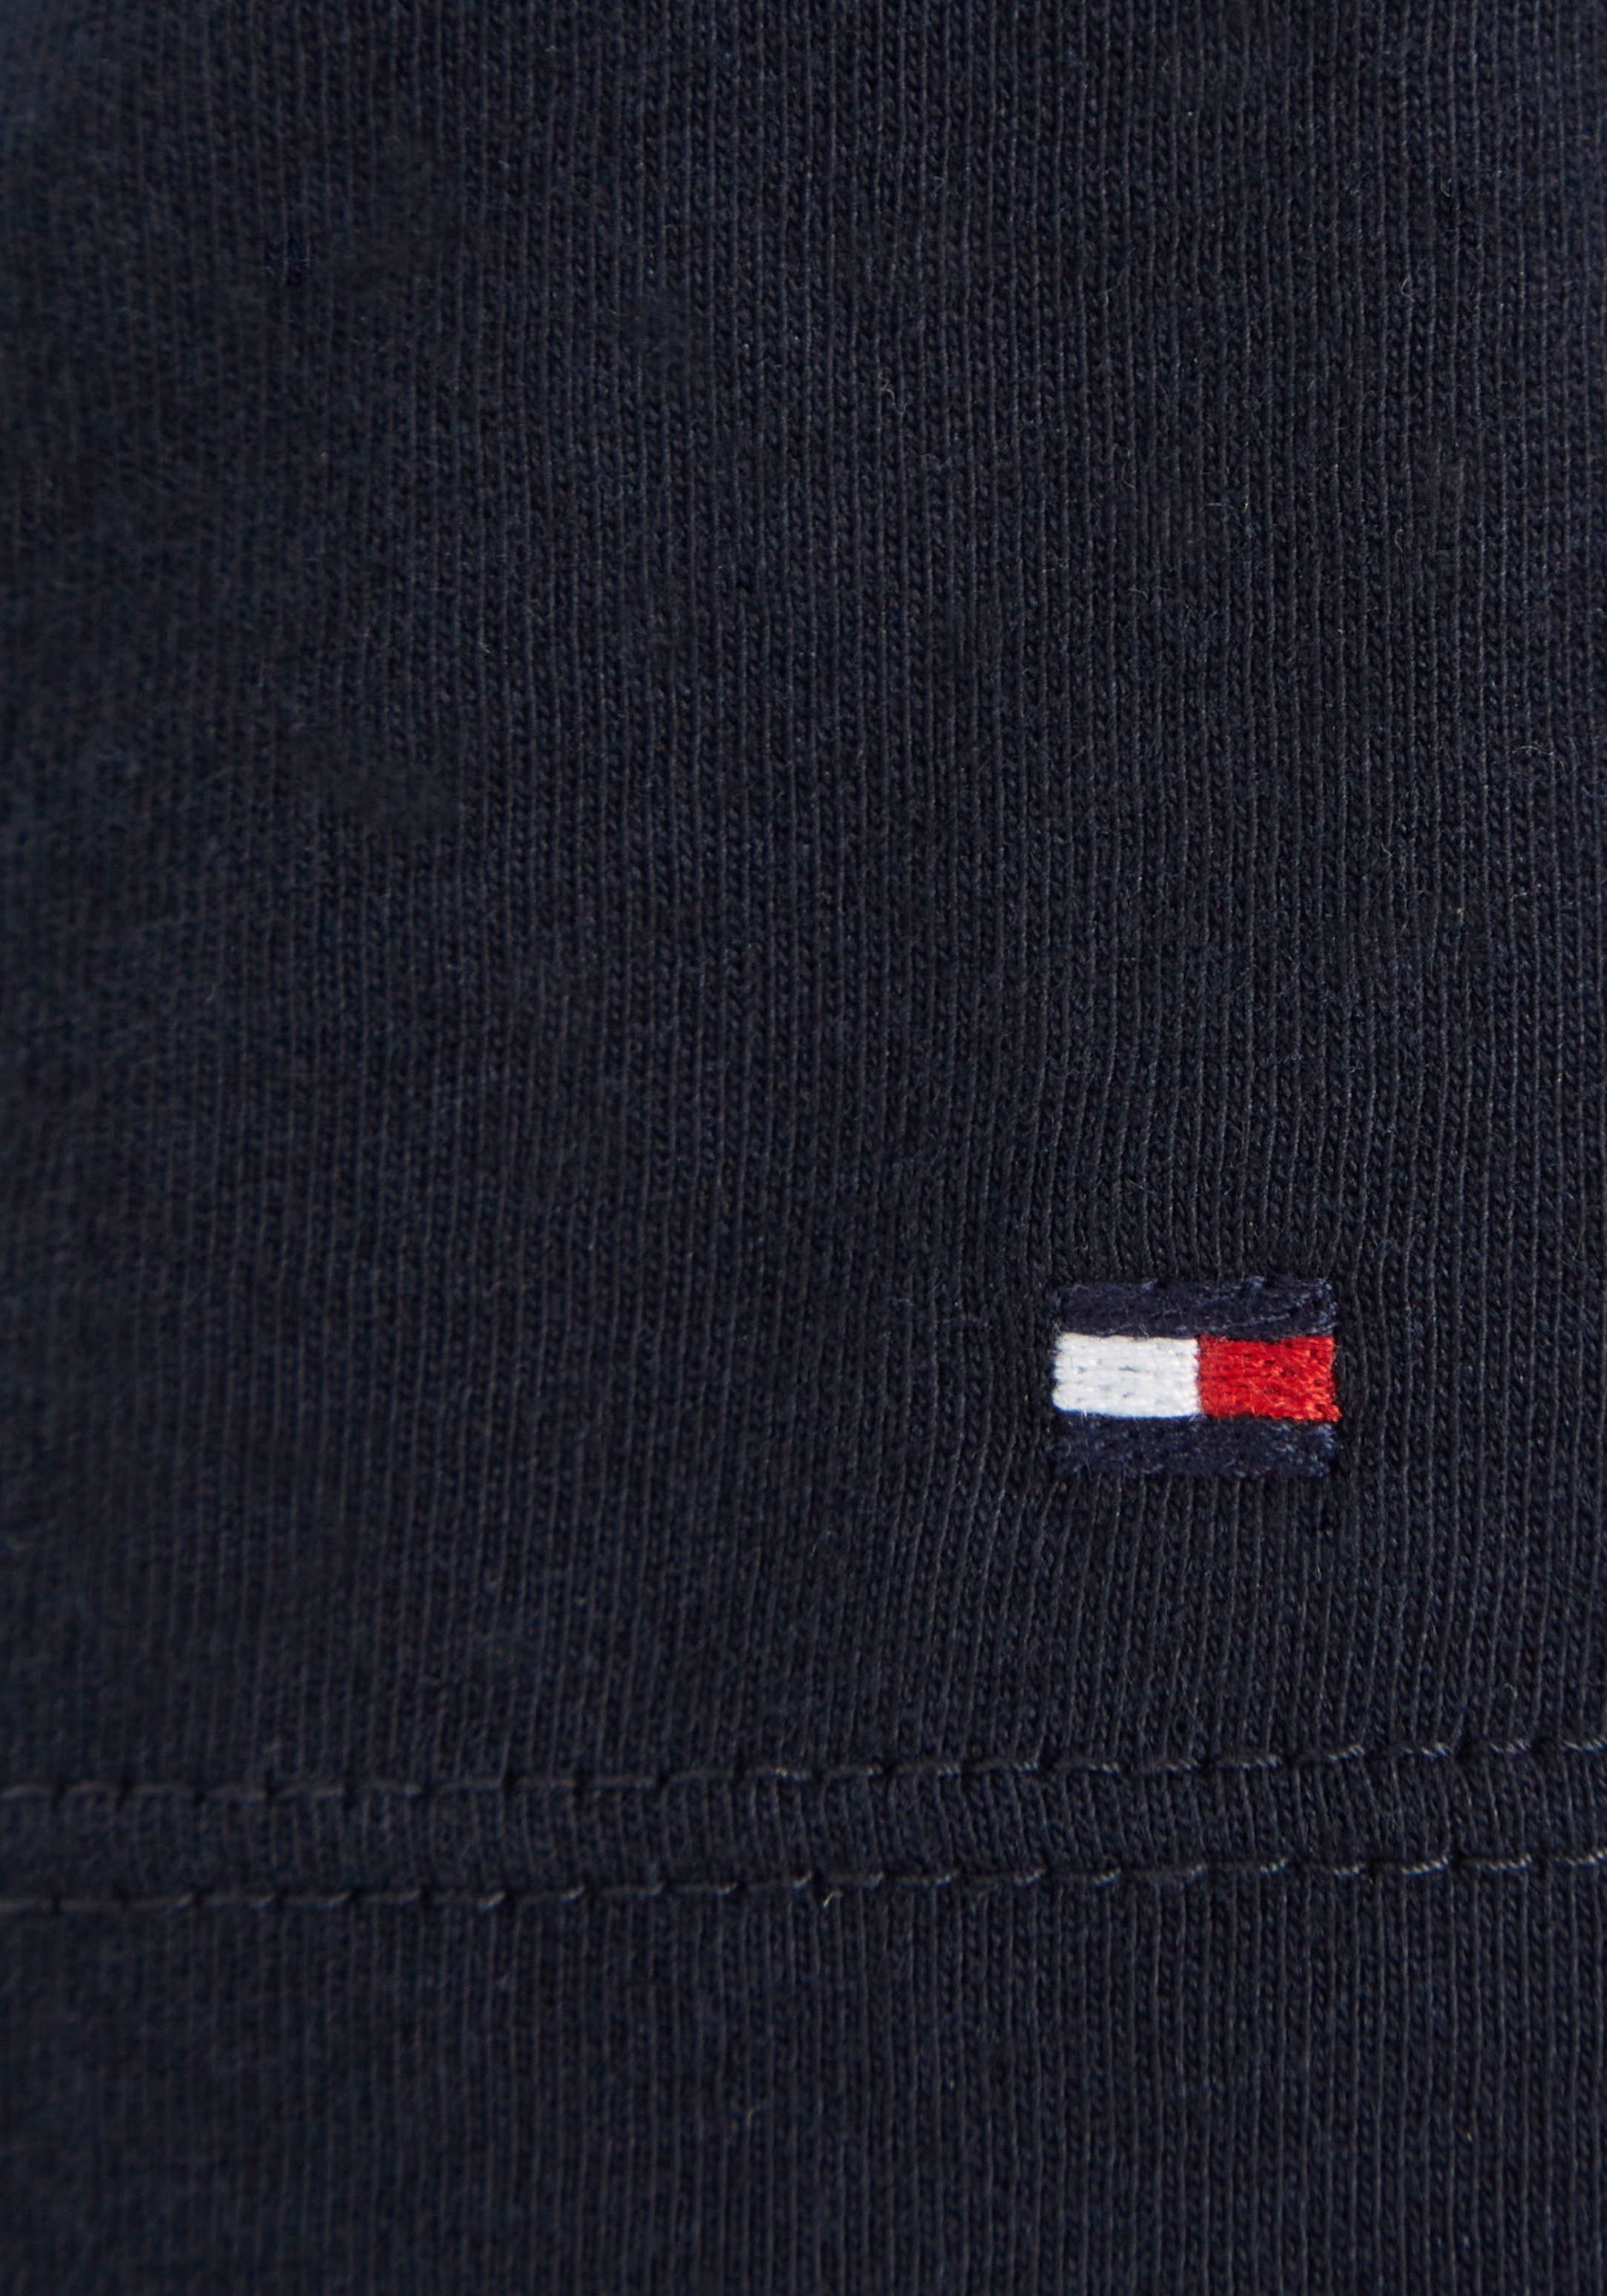 T-Shirt MONOTYPE Brust auf dunkelblau modischem mit Tommy S/S Hilfiger-Logoschriftzug Hilfiger TEE der